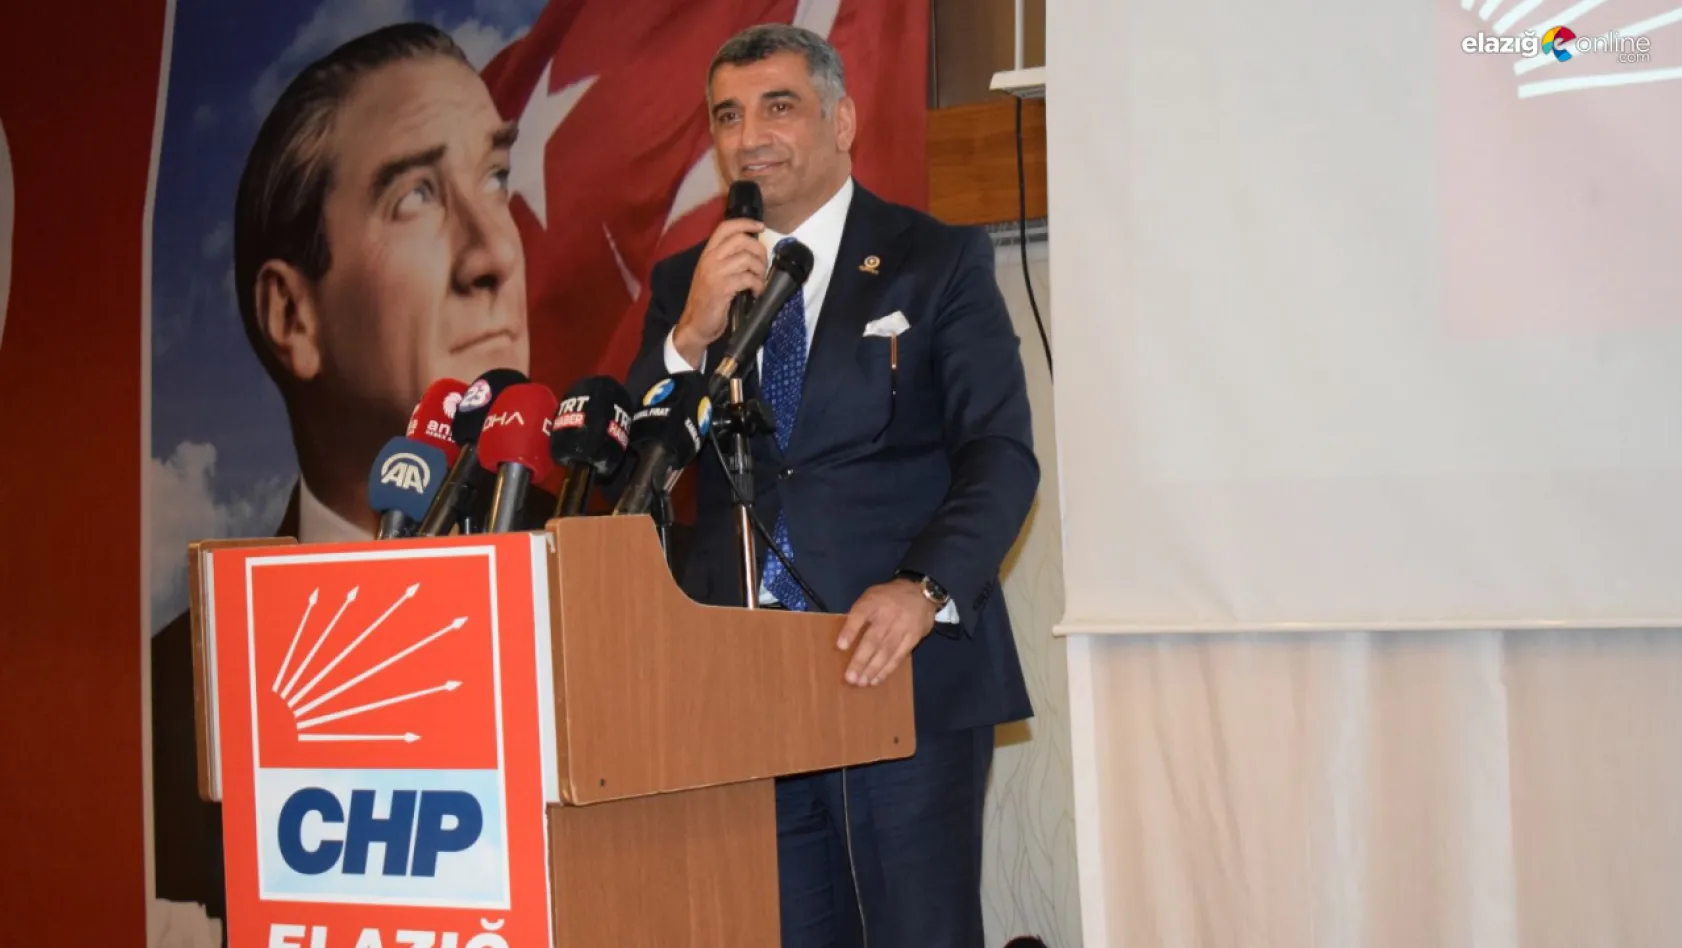 'Elazığ'daki siyaset tablosu değişecek'